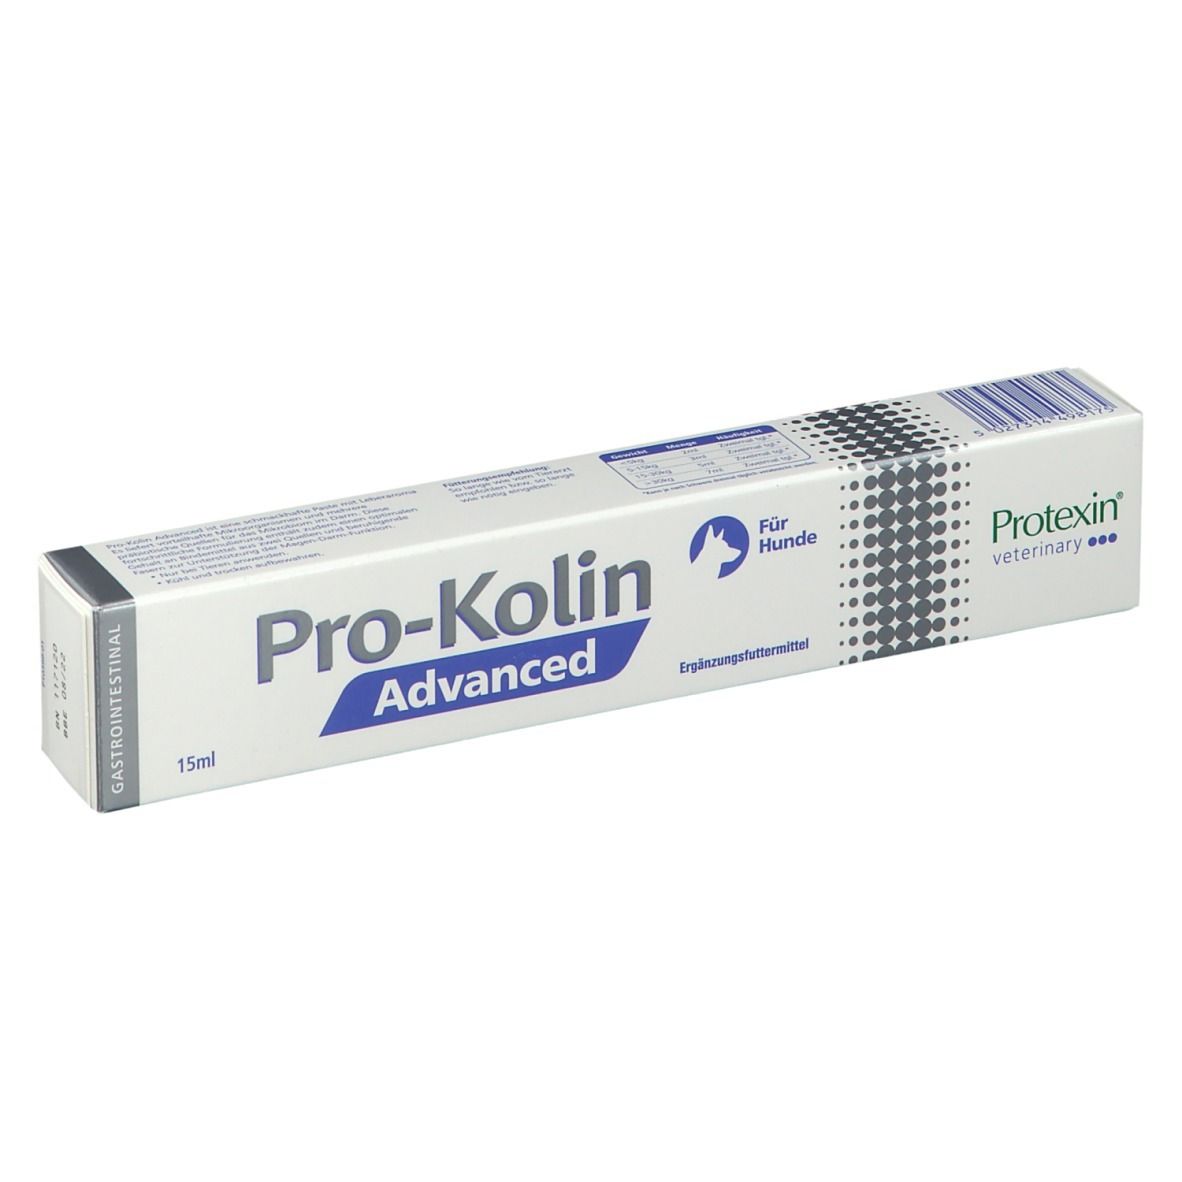 RICHTER PHARMA AG Pro-Kolin Advanced